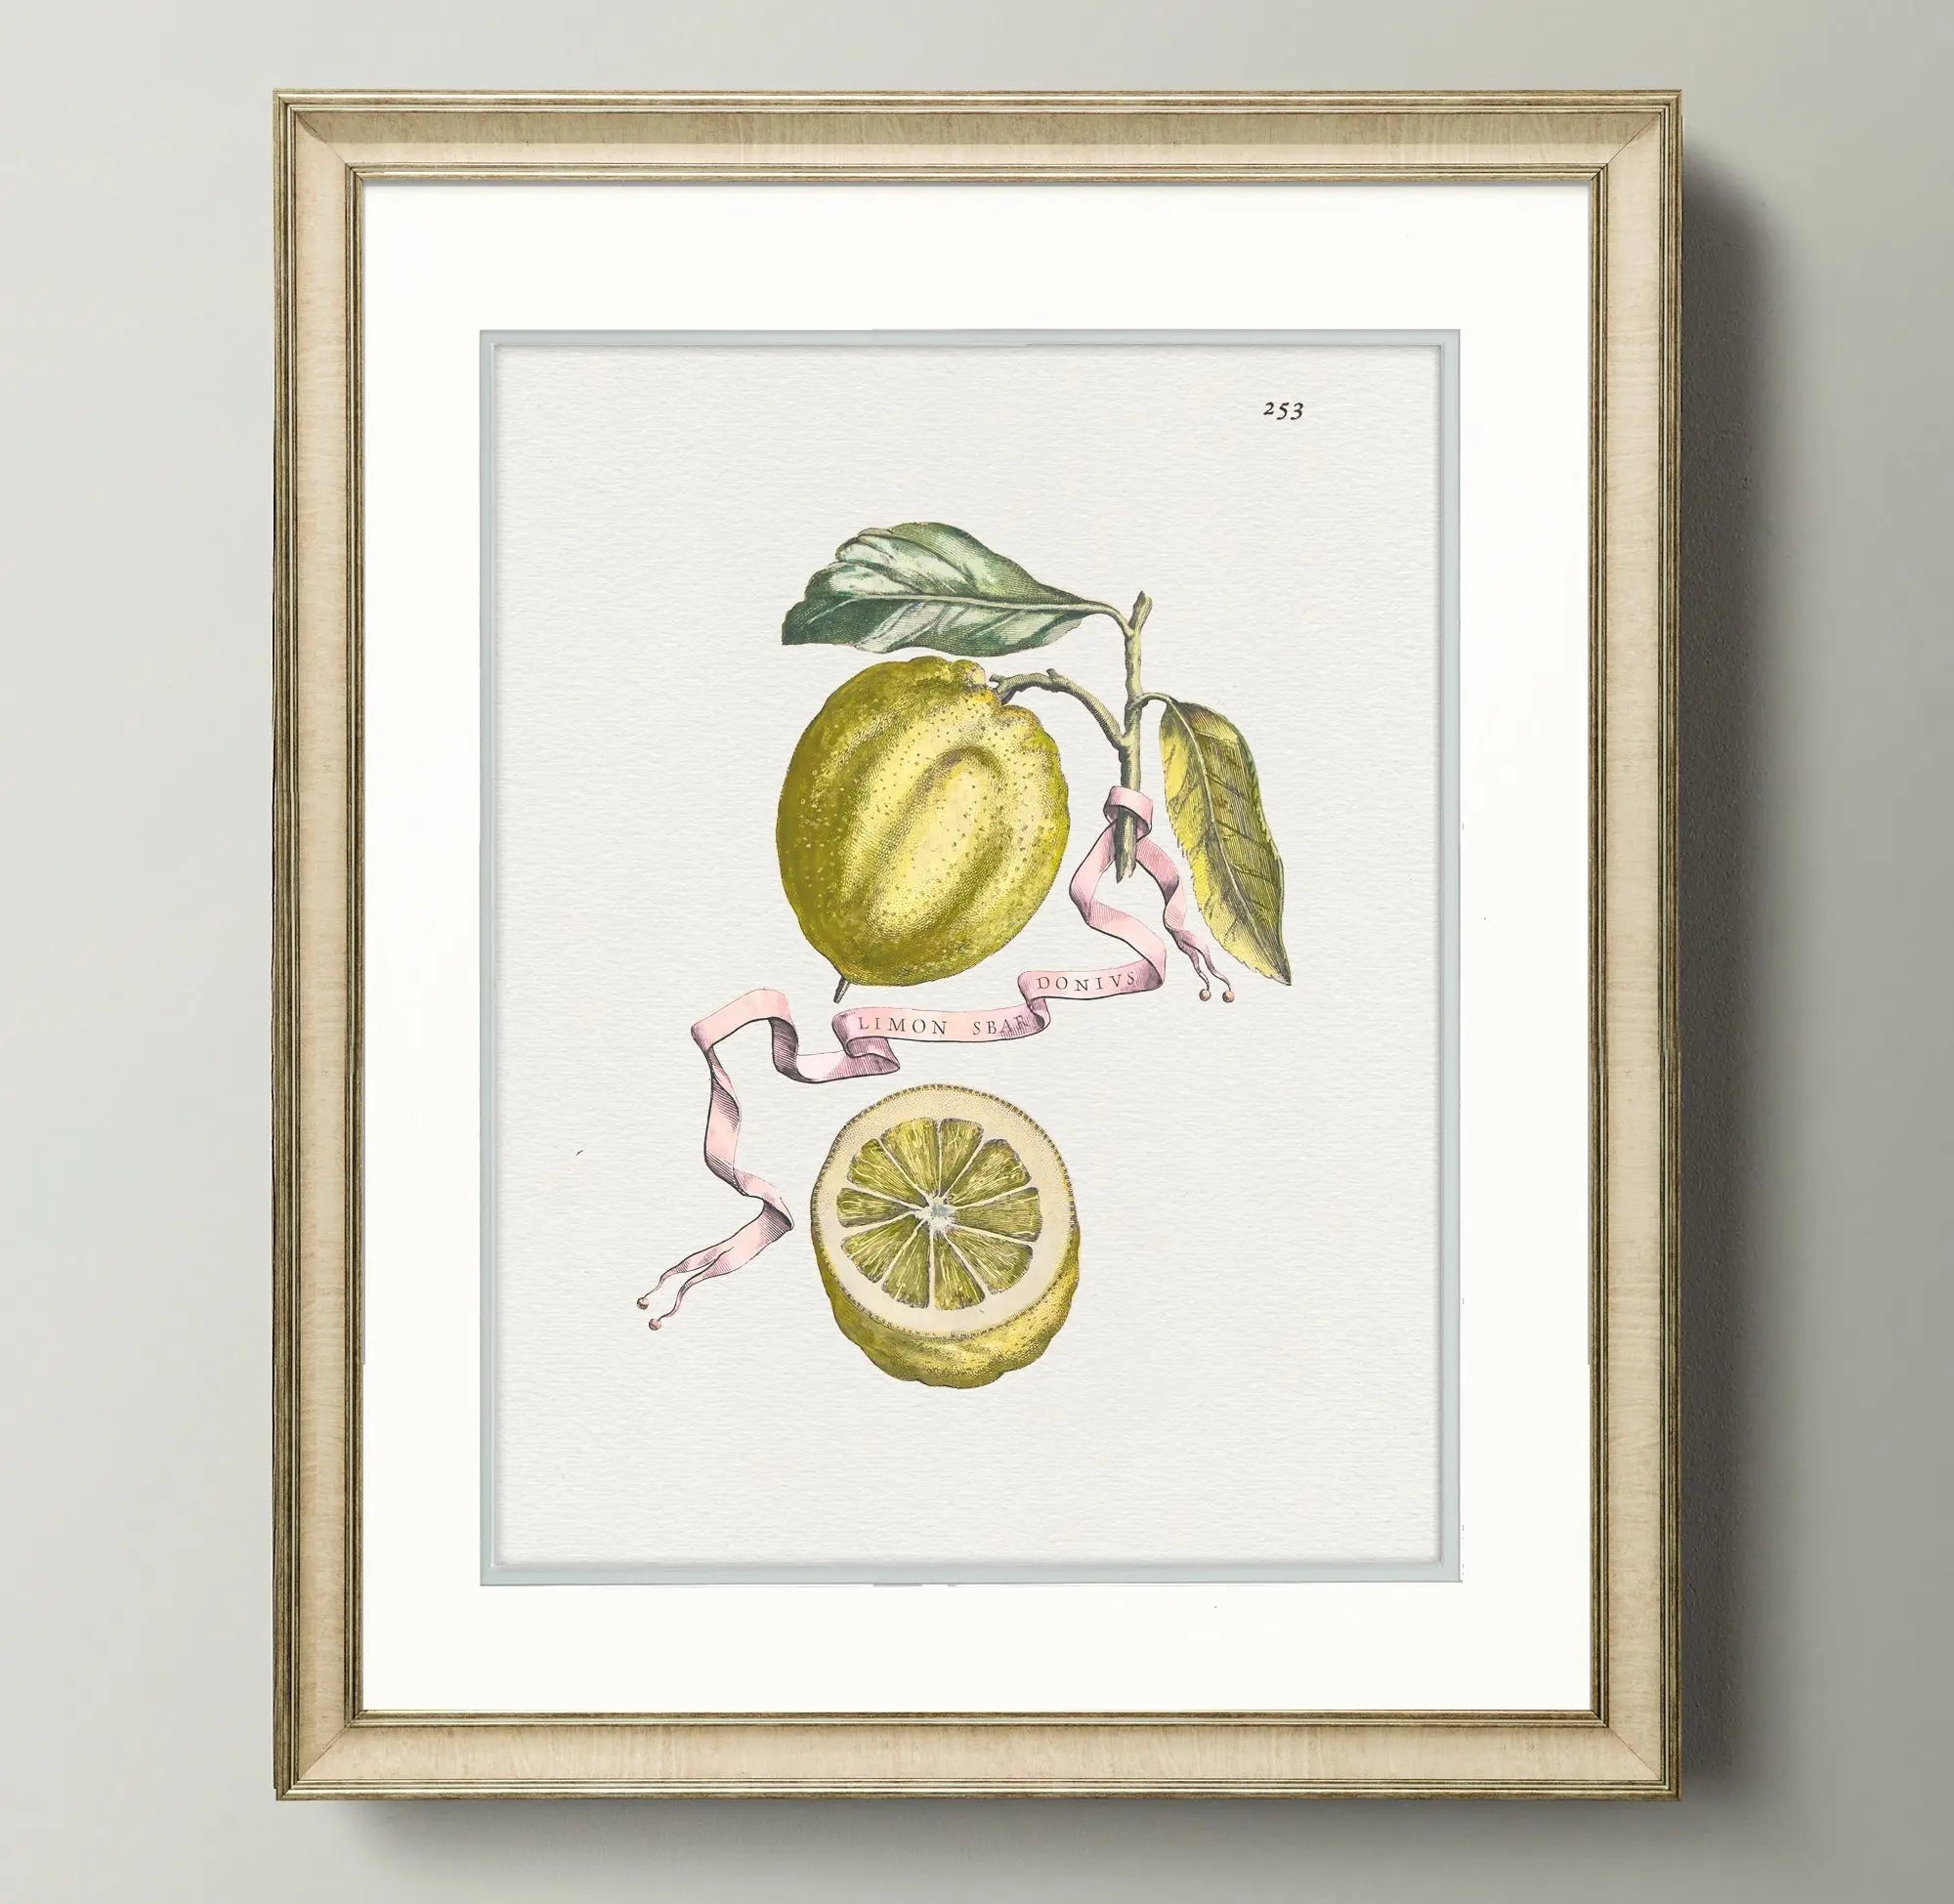 Citrus Botanicals - Lemon - Plate 253